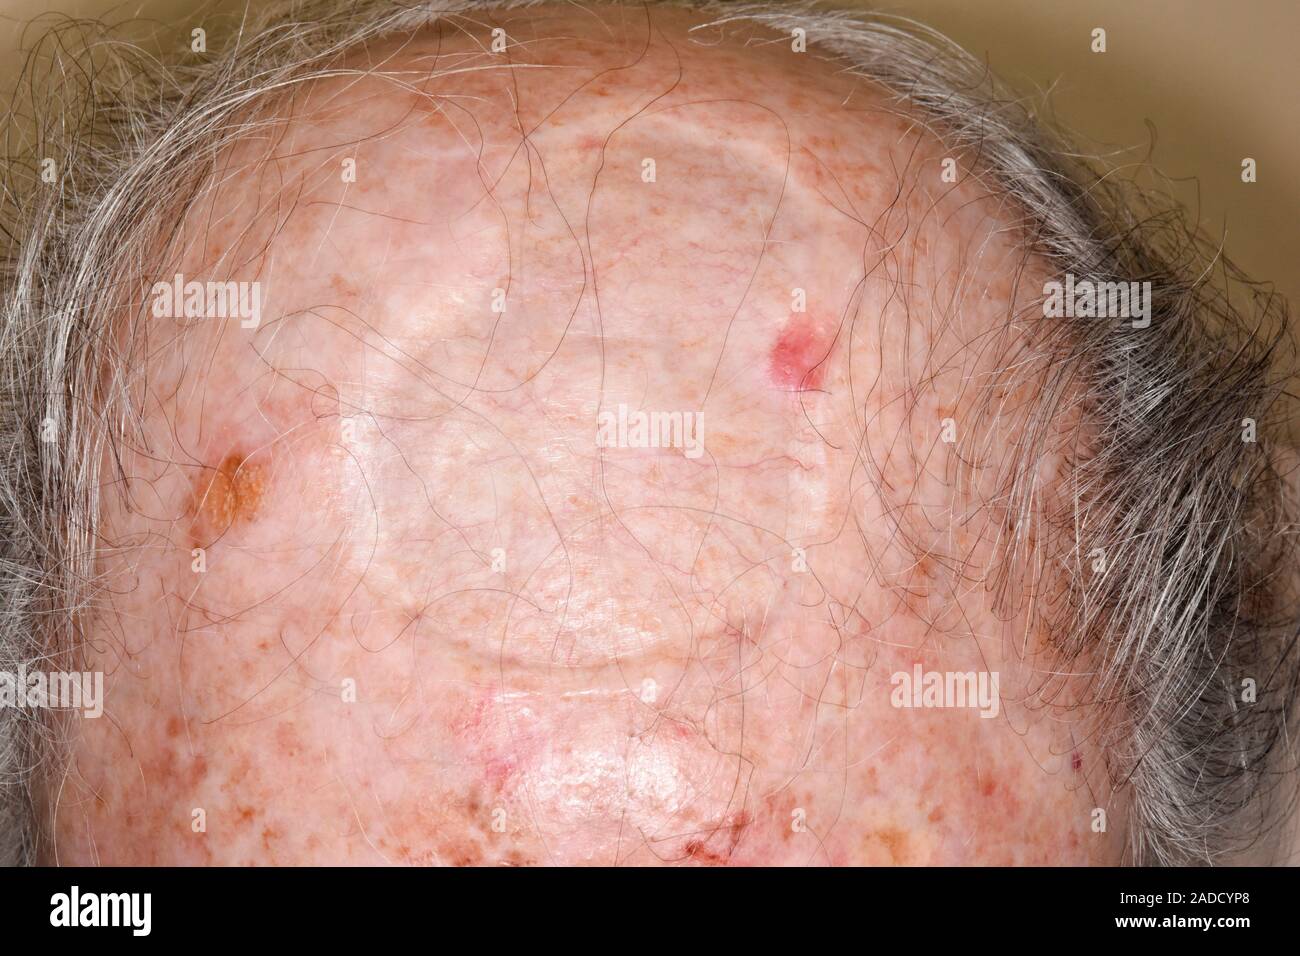 Carcinoma de células basales cicatriz después de la escisión del cuero  cabelludo de un anciano de 86 años. Esto fue una escisión amplia de un carcinoma  basocelular recurrente. Esto es s Fotografía